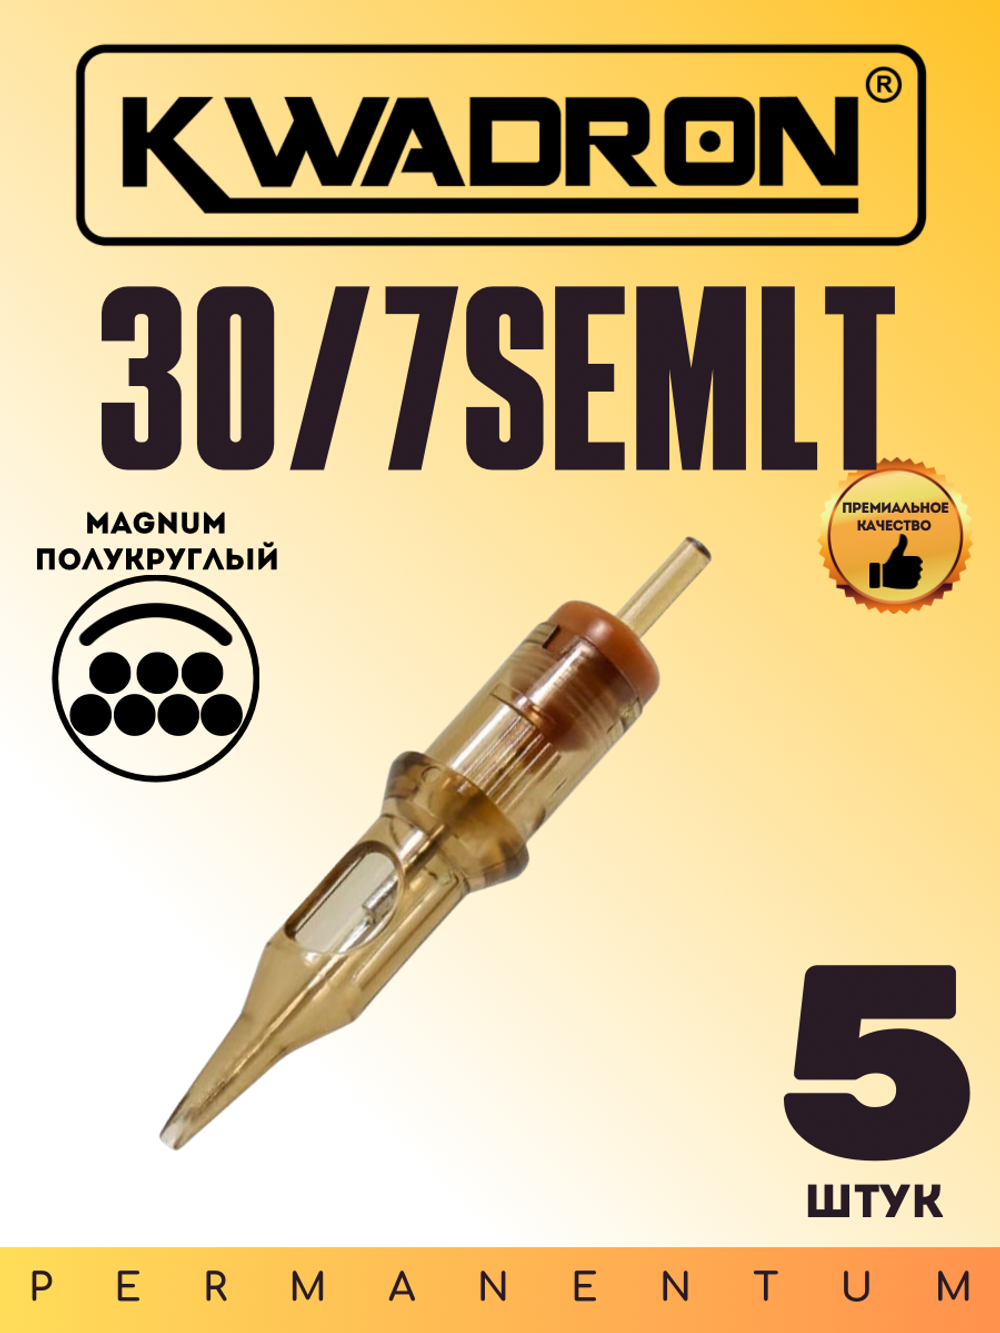 Картридж для татуажа "KWADRON Soft Edge Magnum 30/7SEMLT" блистер 5 шт.